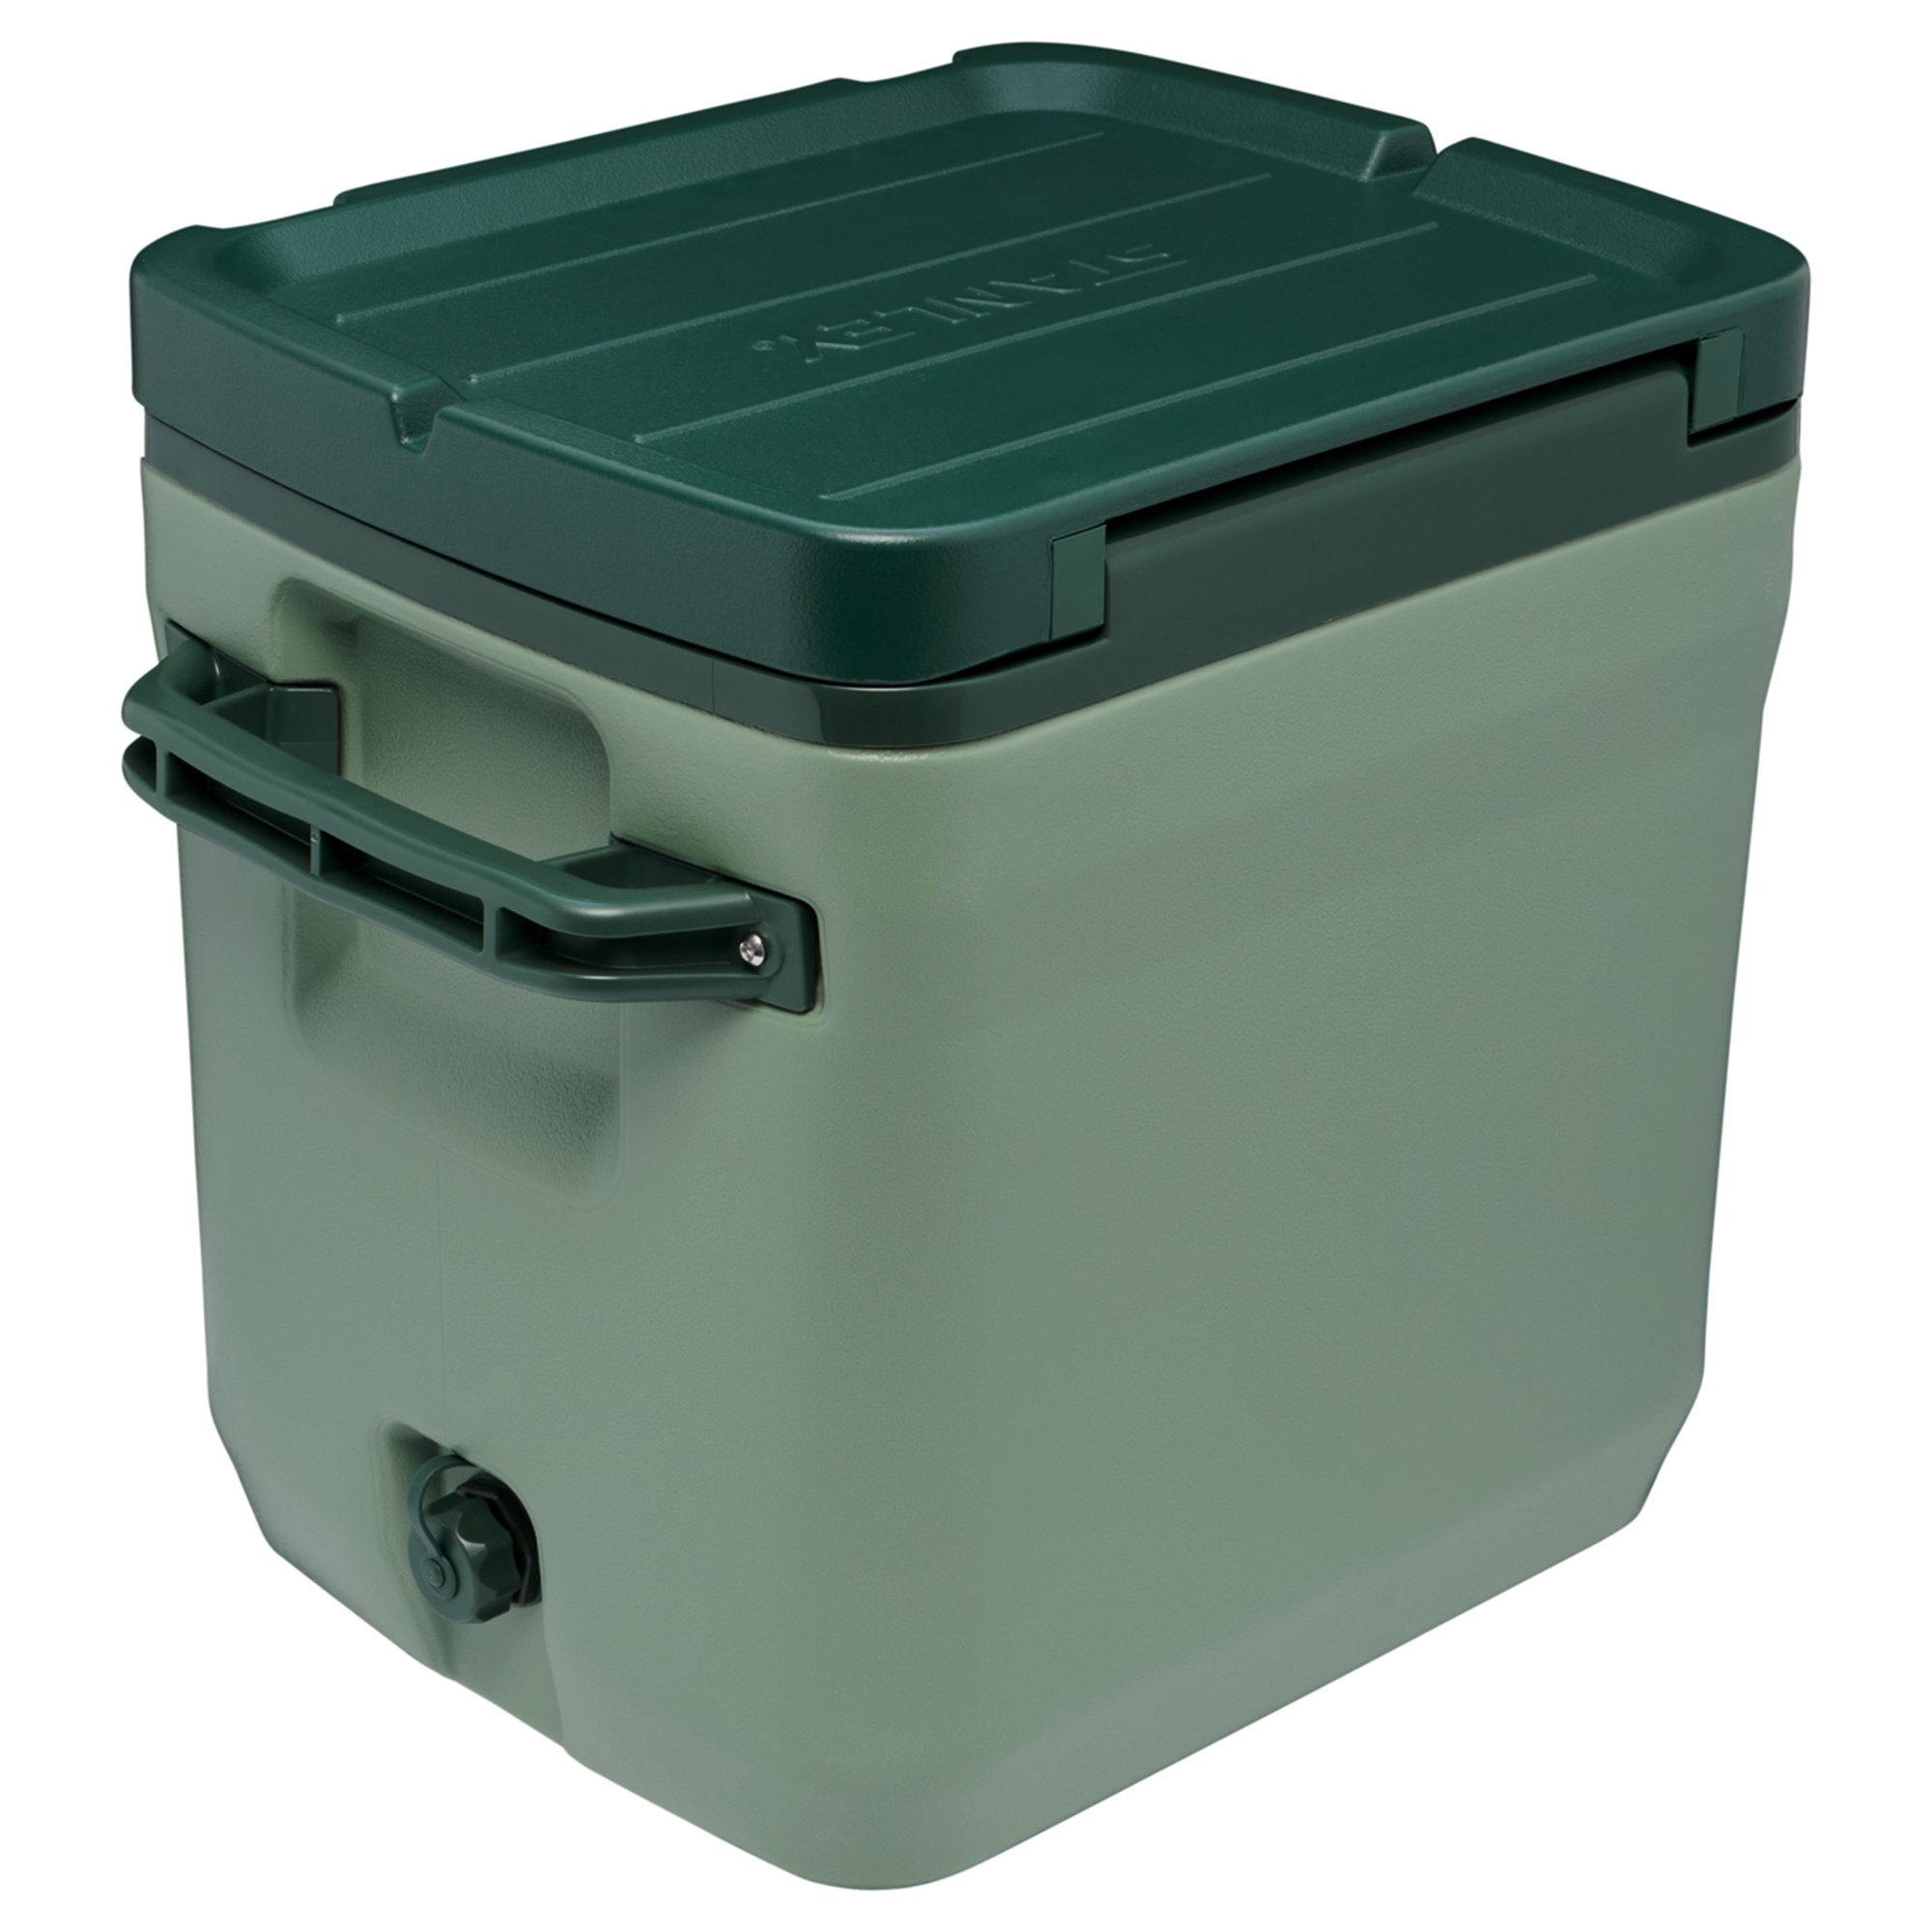 4: Stanley Cold For Days Outdoor Cooler køleboks 28,3 liter, stanley green